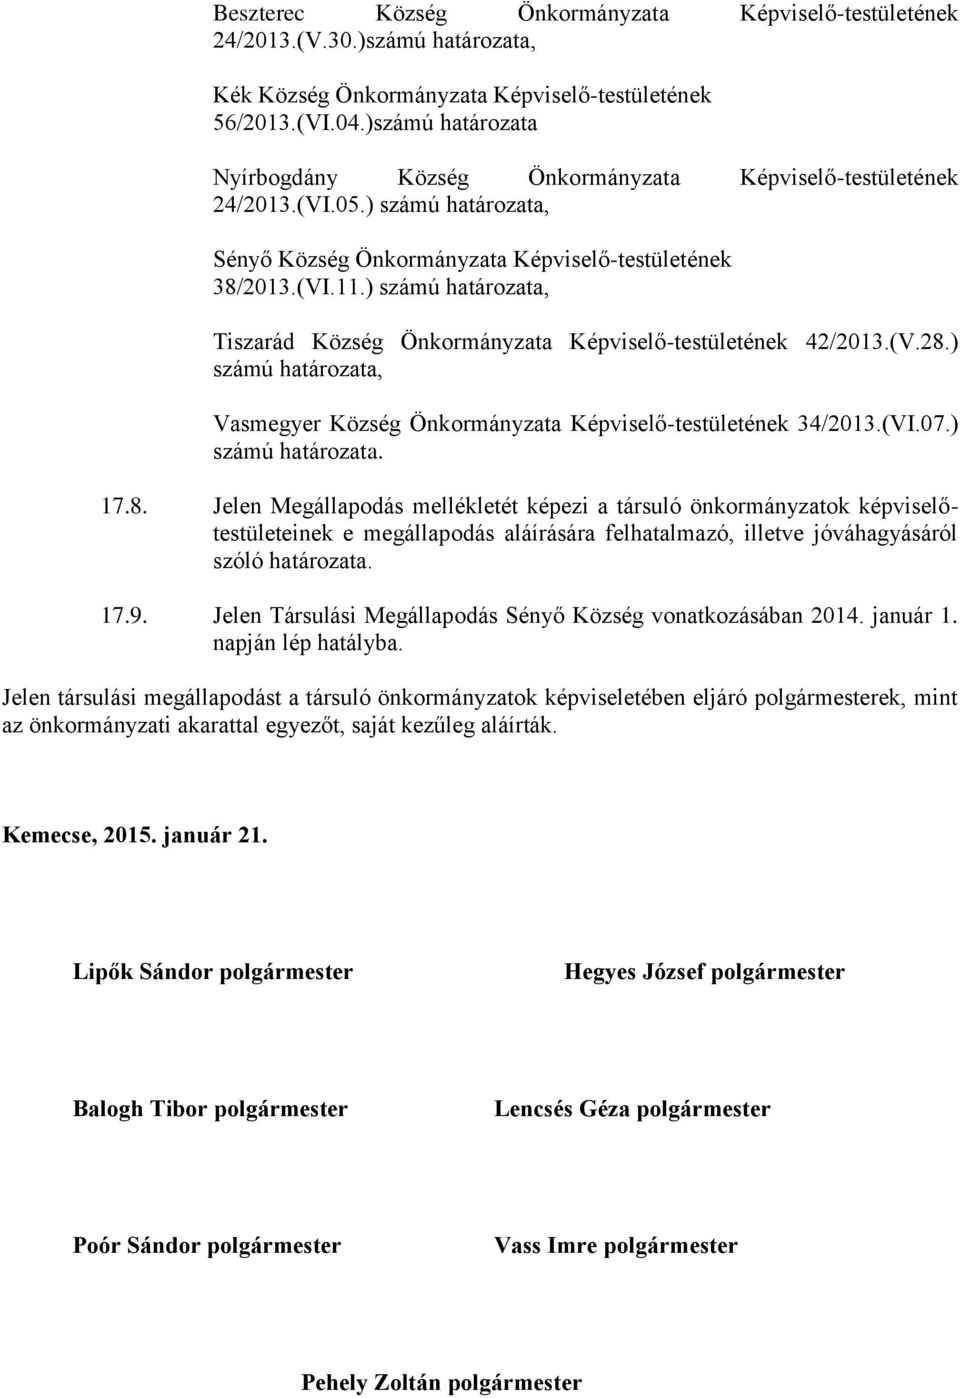 ) számú határozata, Tiszarád Község Önkormányzata Képviselő-testületének 42/2013.(V.28.) számú határozata, Vasmegyer Község Önkormányzata Képviselő-testületének 34/2013.(VI.07.) számú határozata. 17.